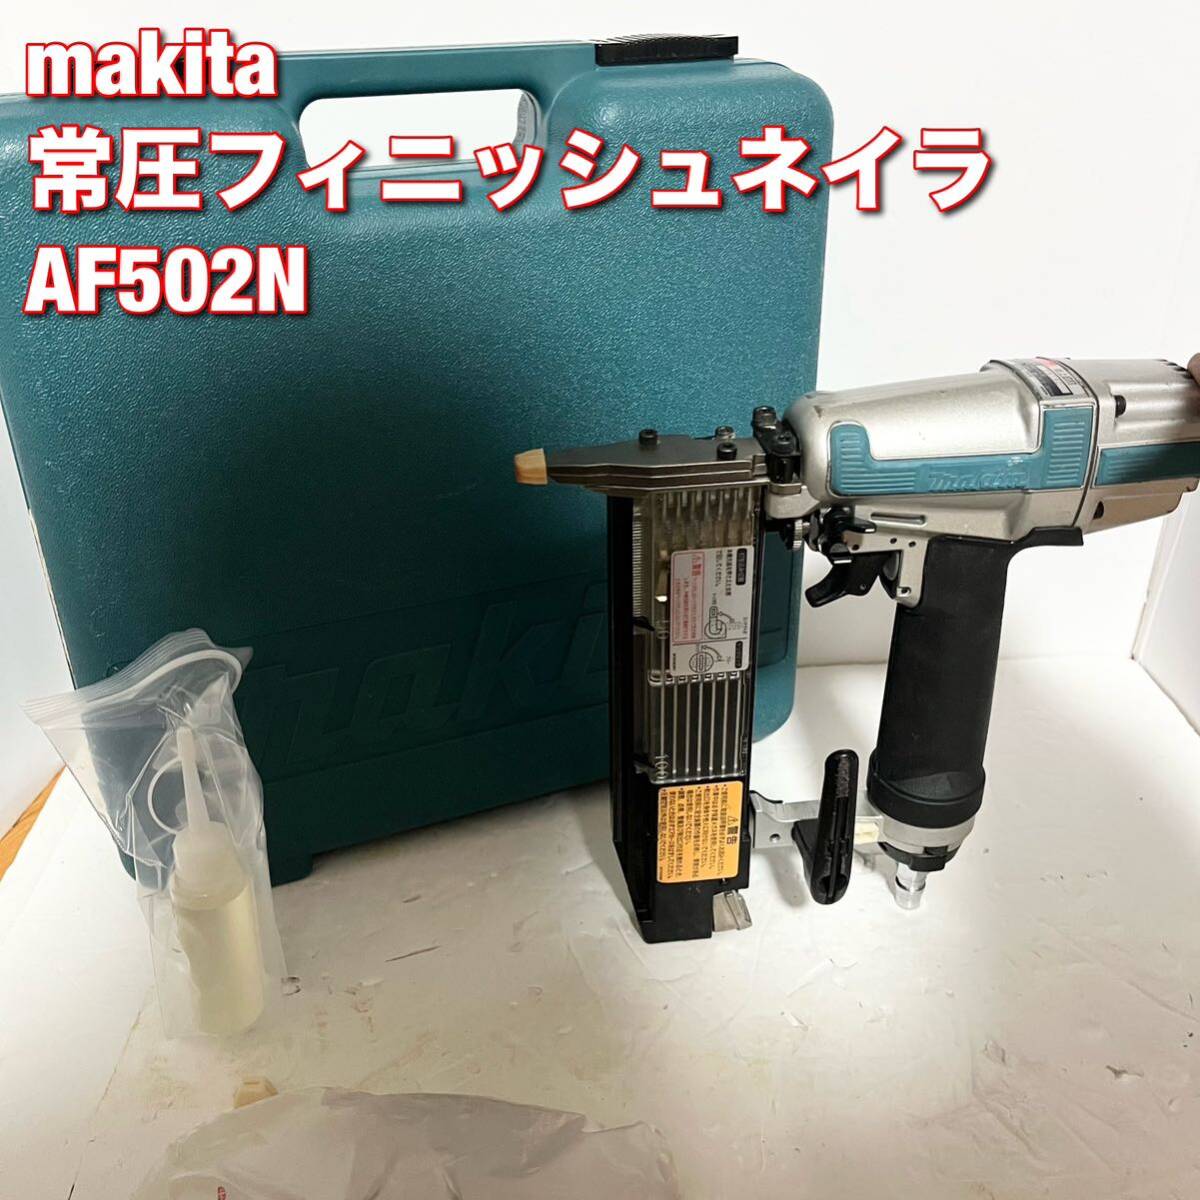 マキタ(makita) 常圧フィニッシュネイラ AF502N 仕上釘打機